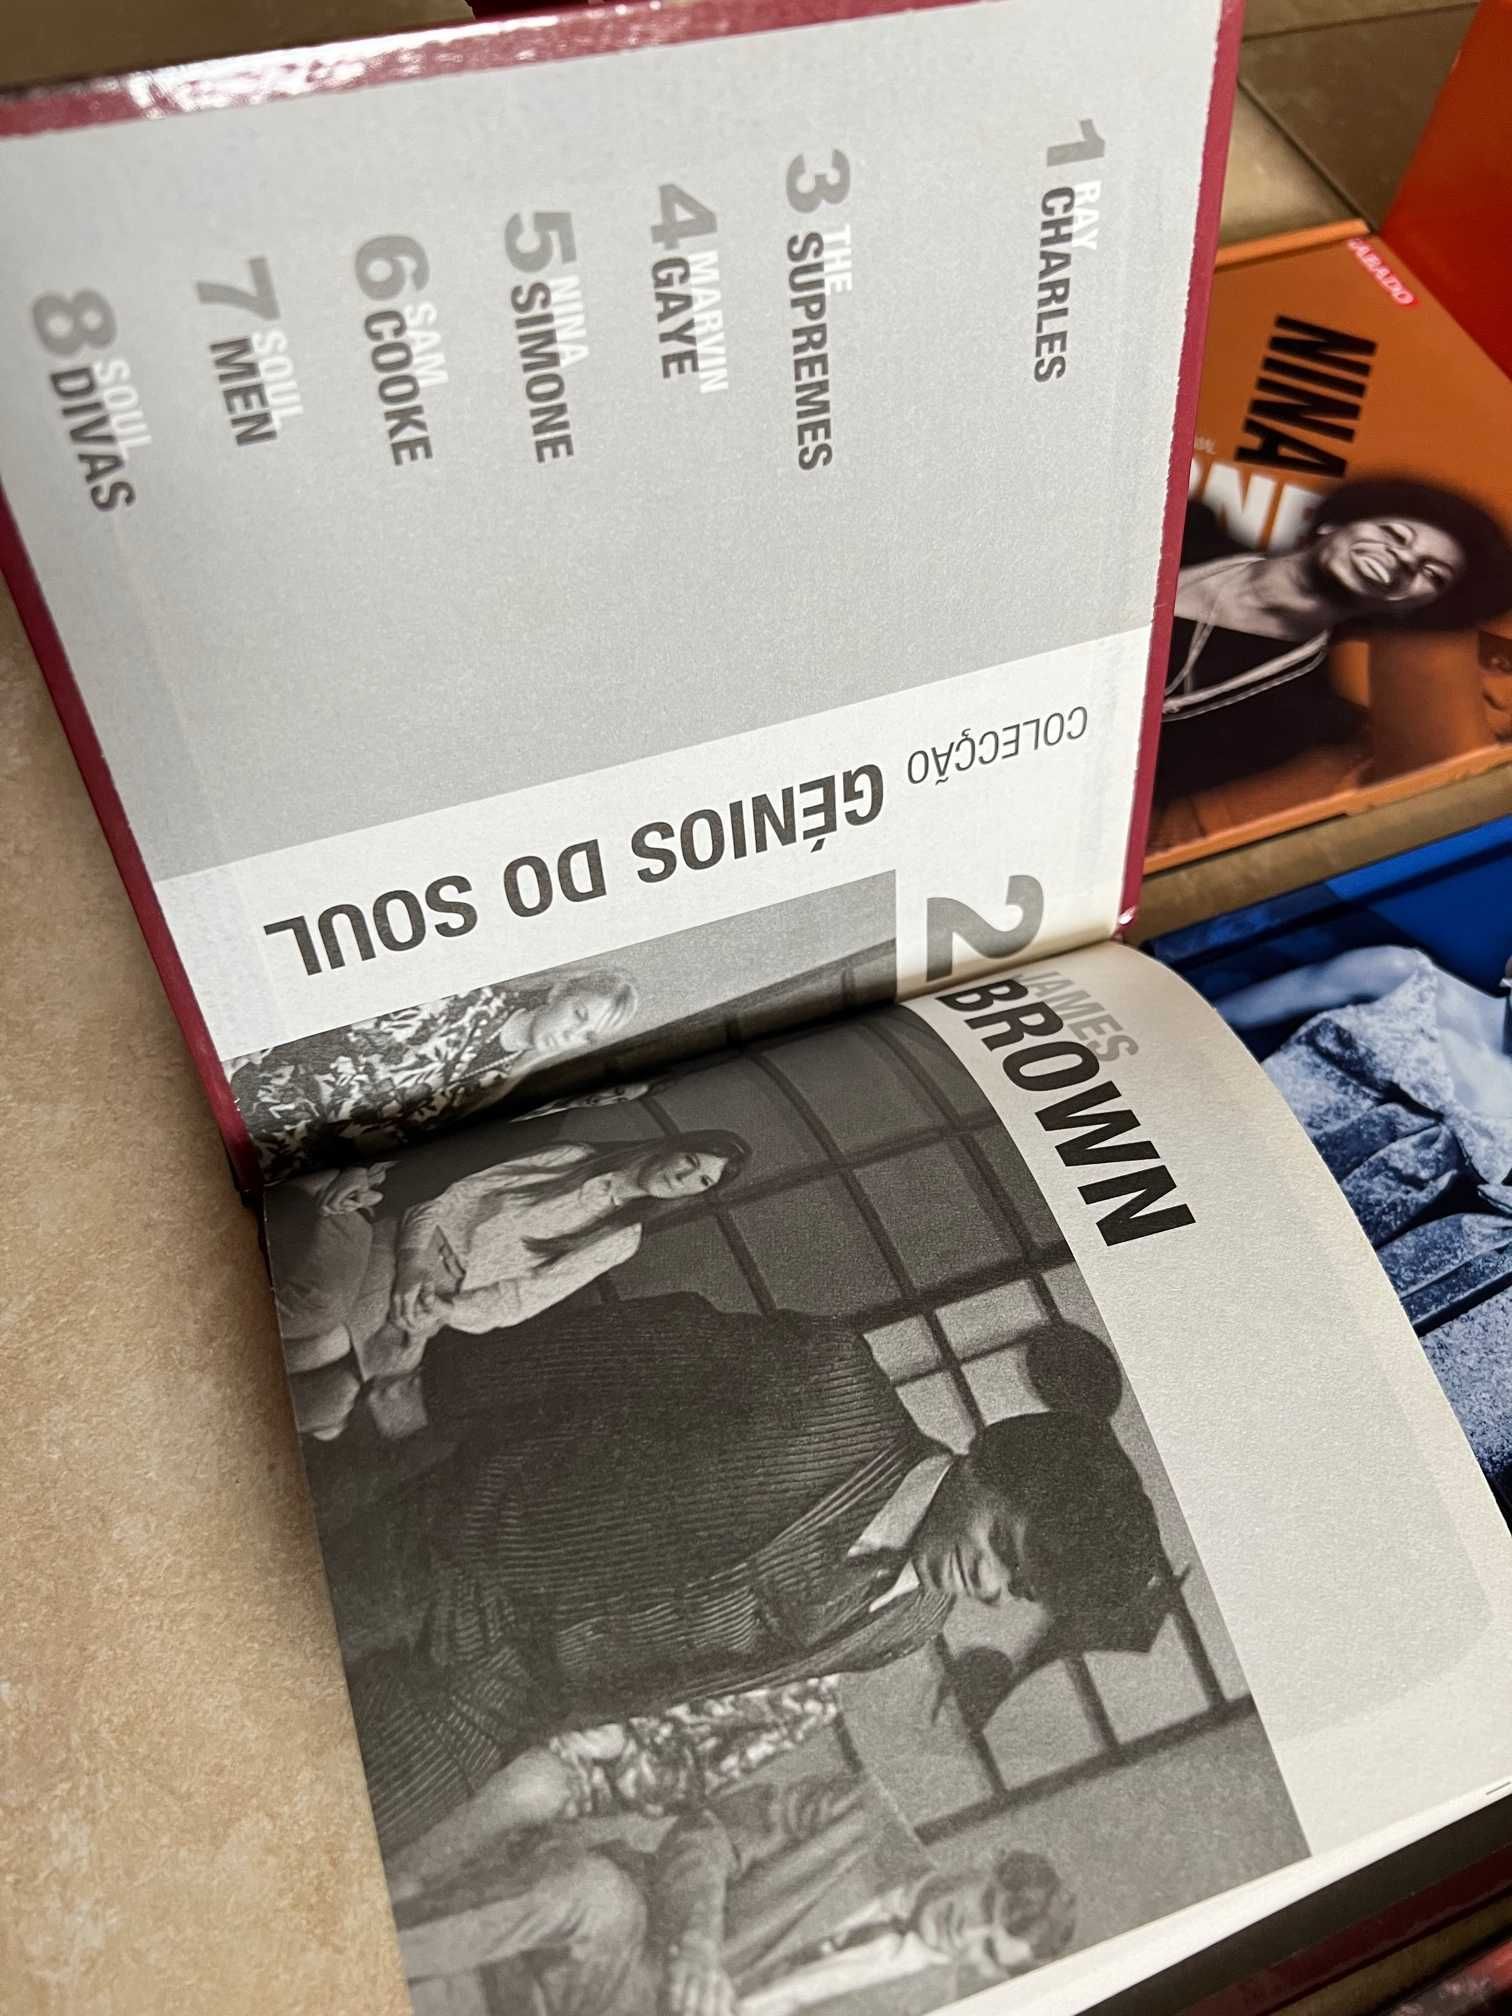 Colecção Génio do Soul Nova Completa com caixa arquivadora